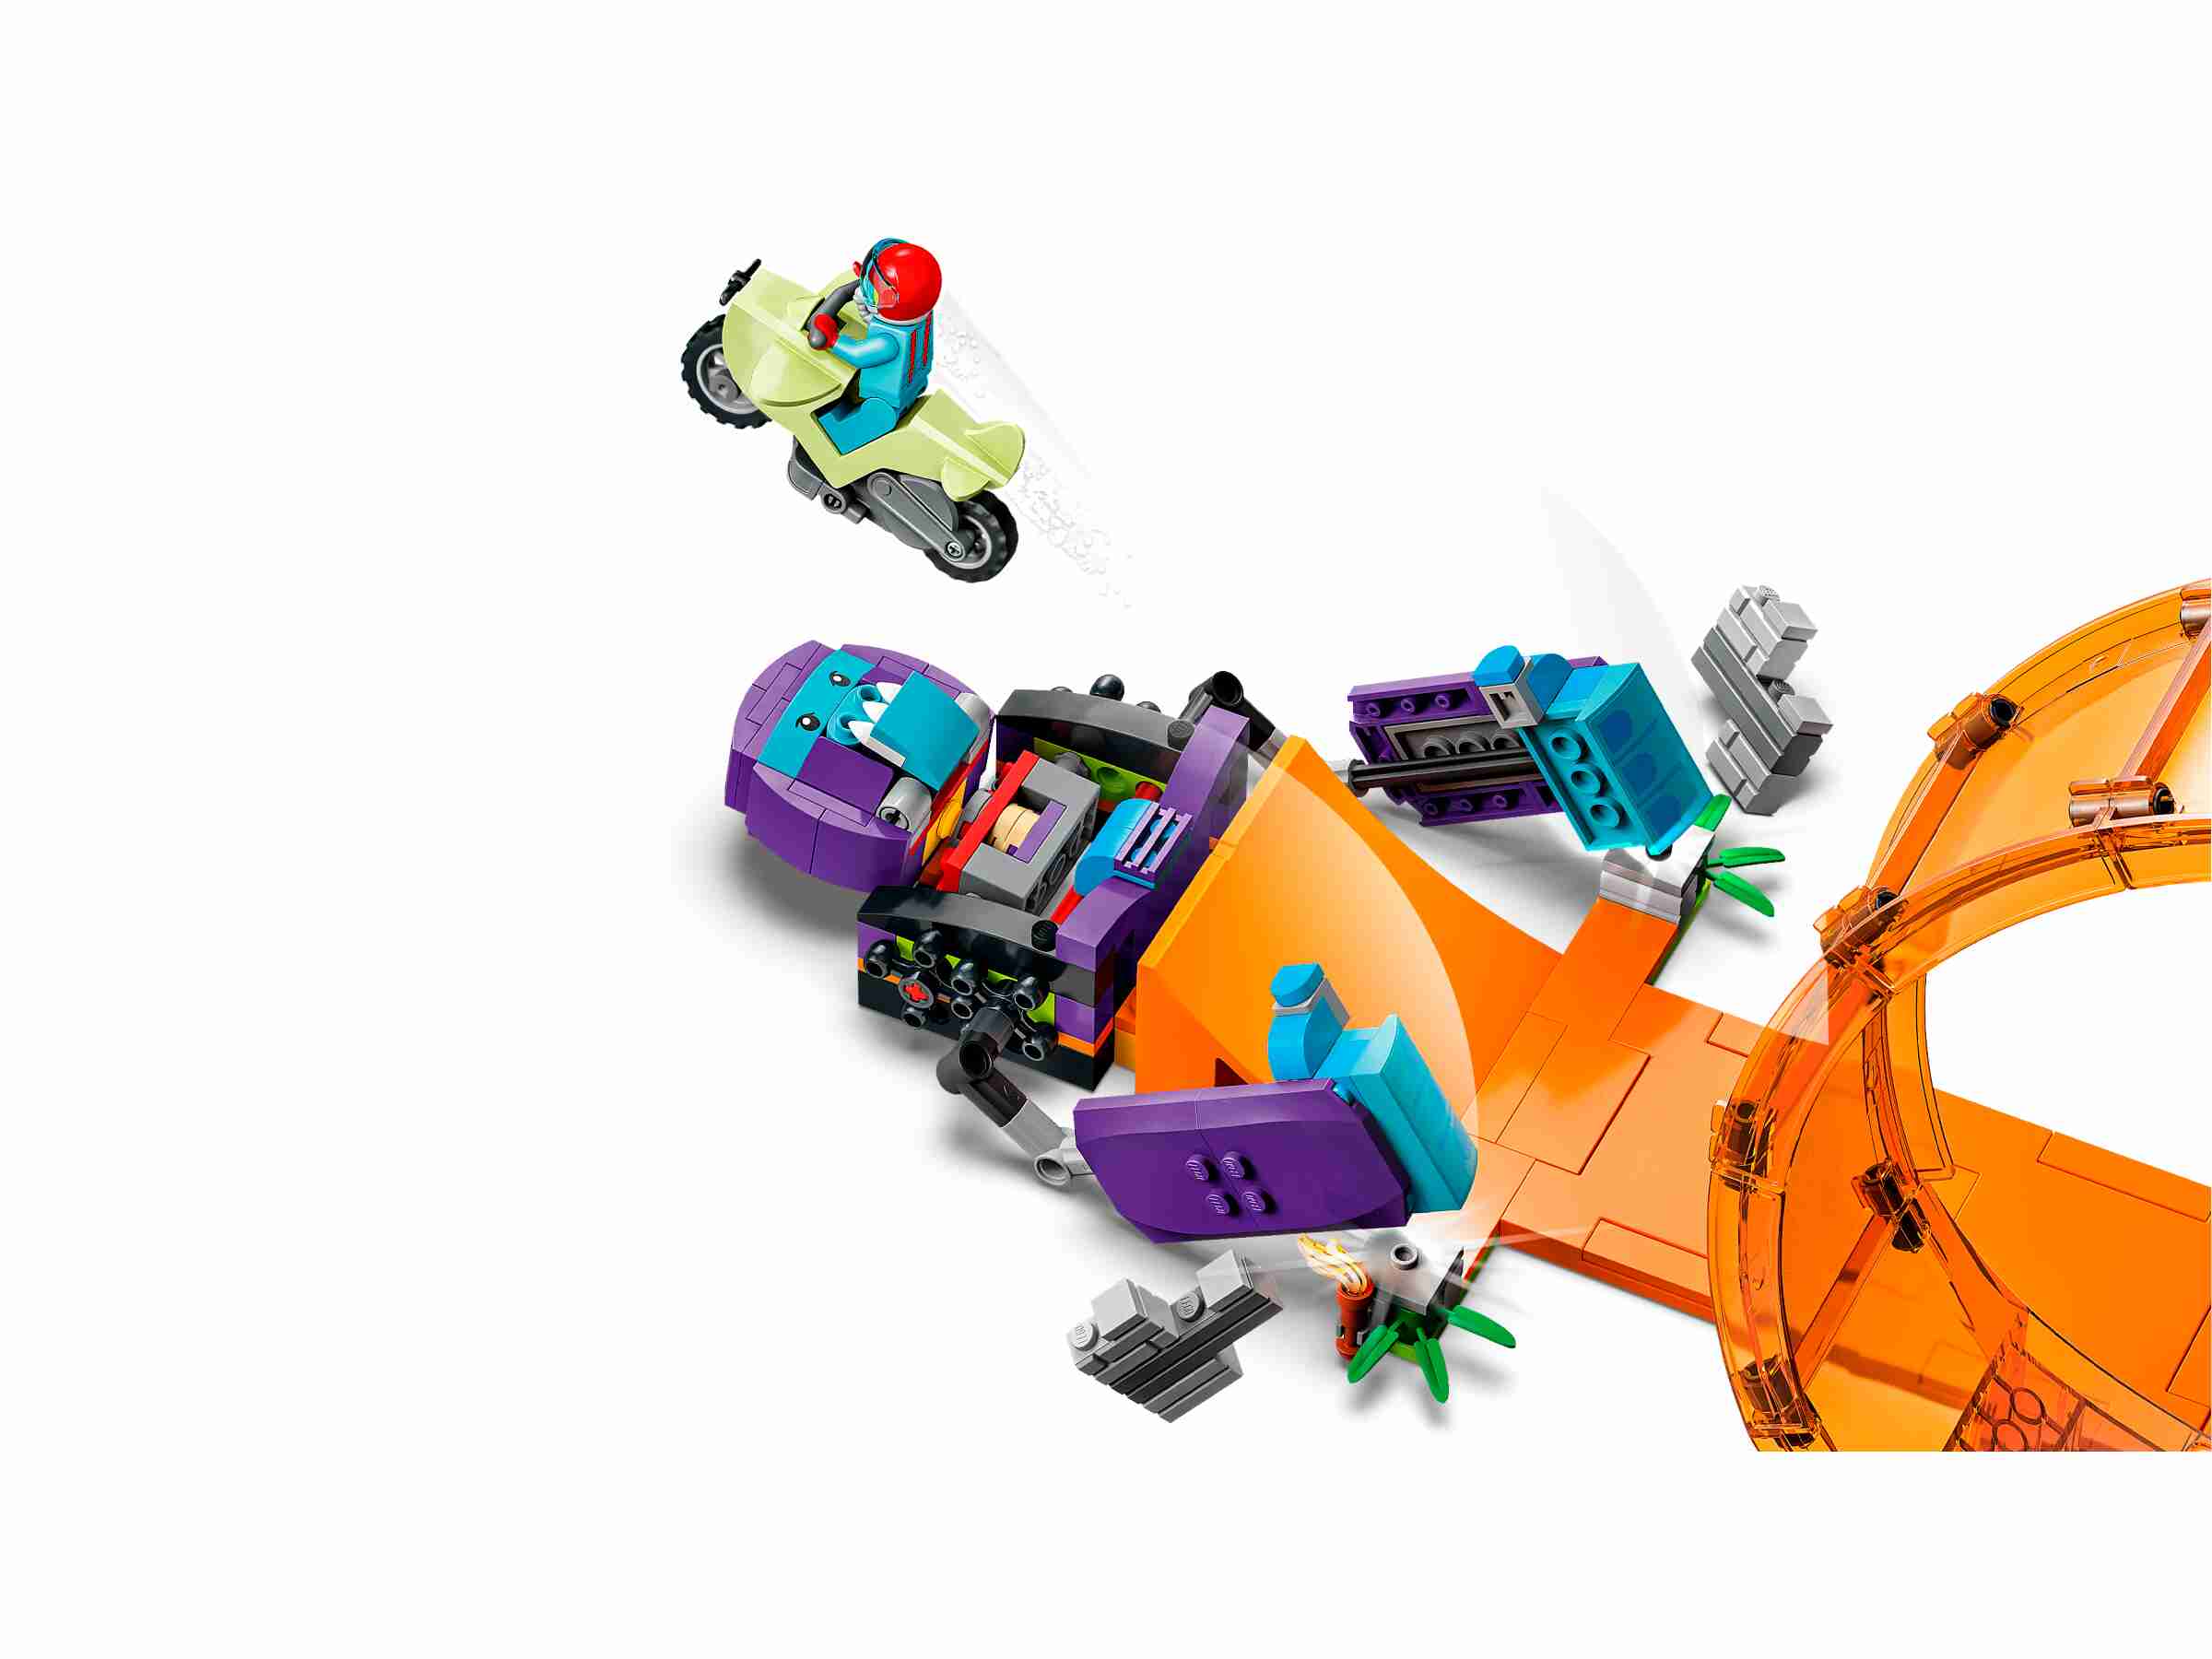 LEGO 60338 City Stuntz Smashing Schimpansen-Stuntlooping mit 3 Minifiguren 